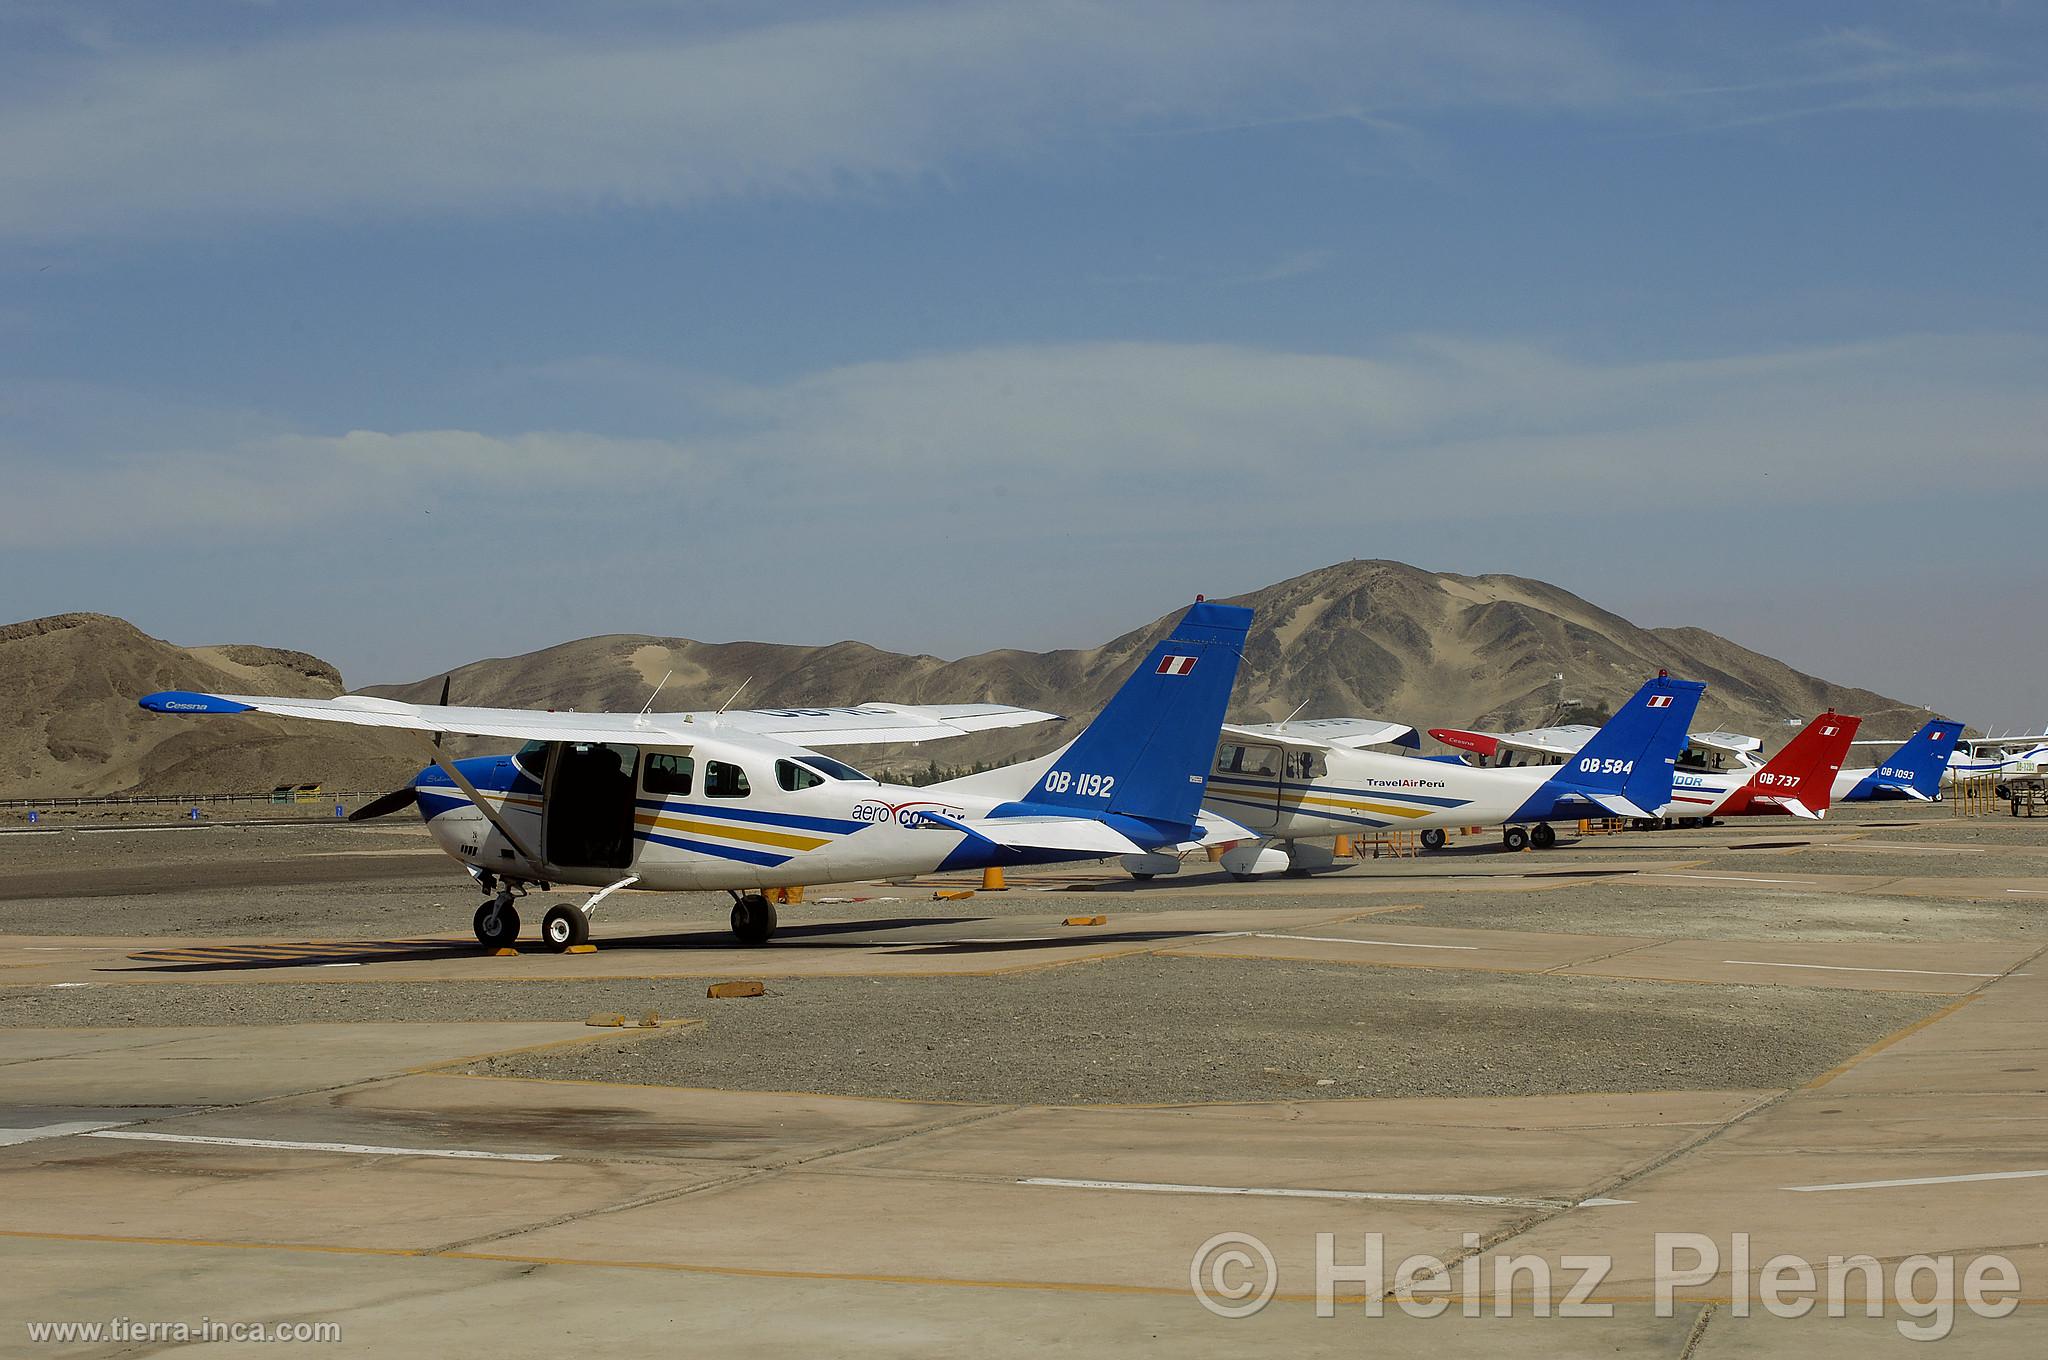 Aeródromo de Nasca, Nazca